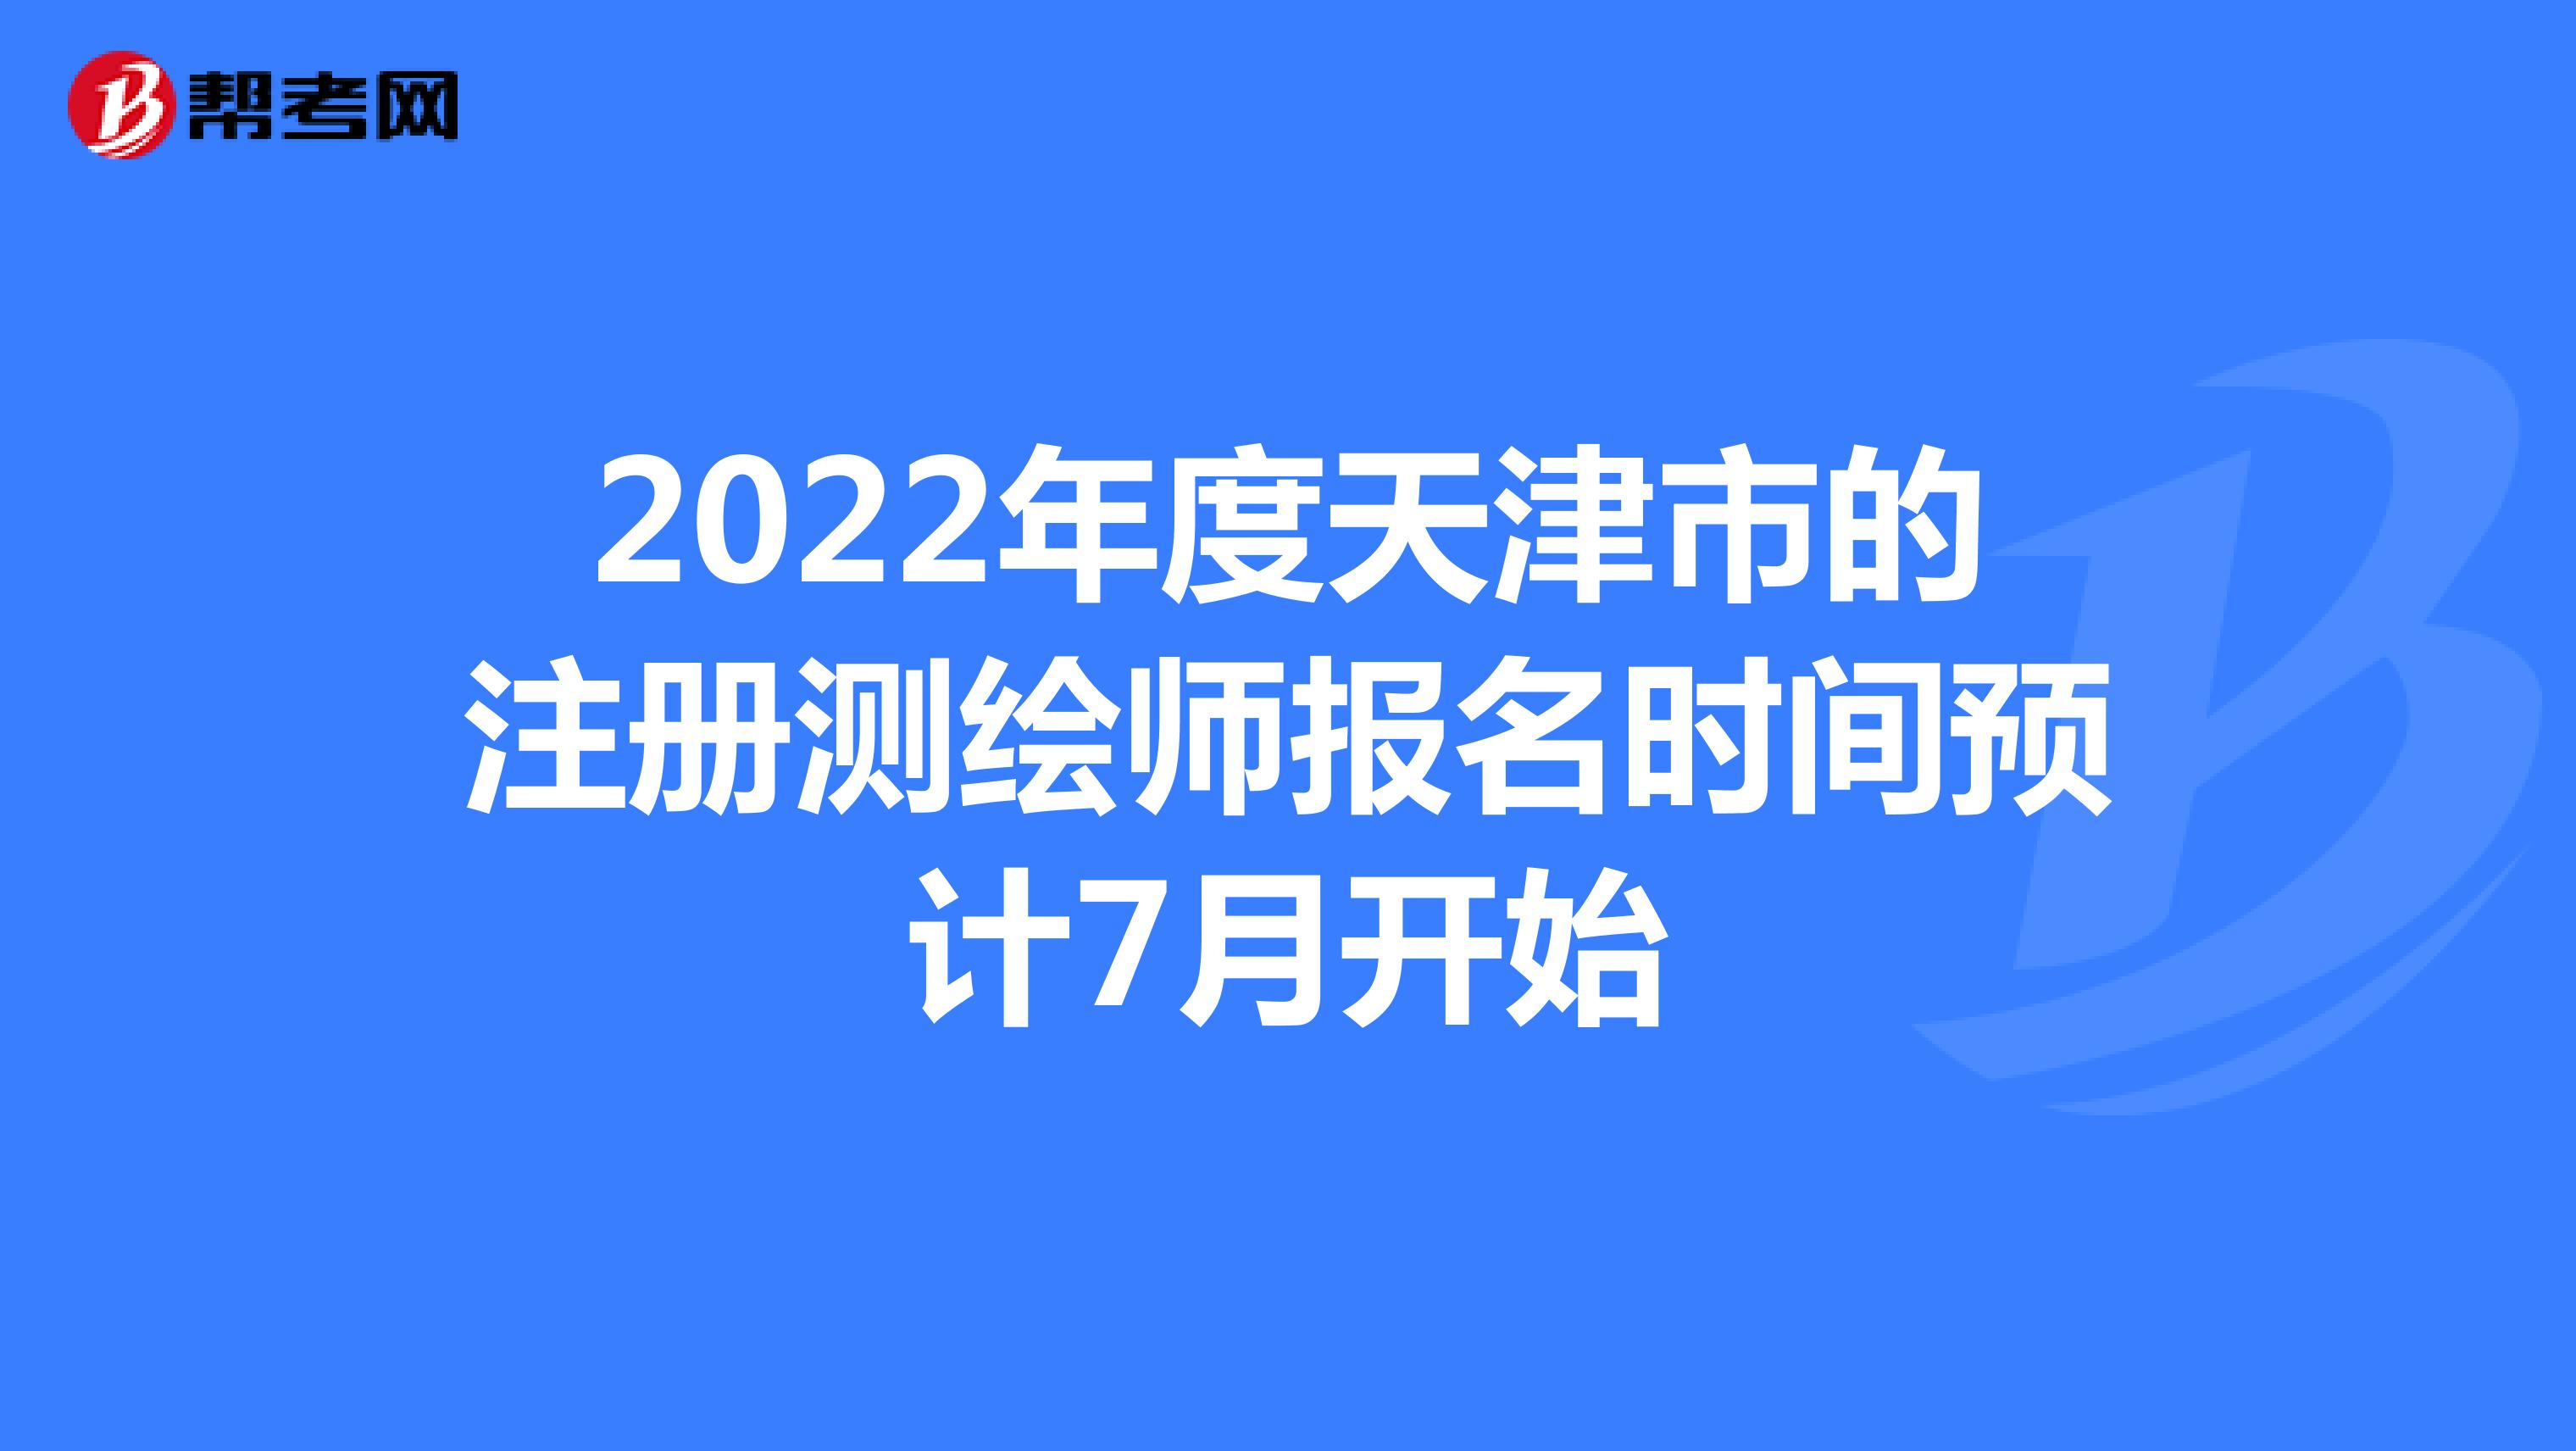 2022年度天津市的注册测绘师报名时间预计7月开始